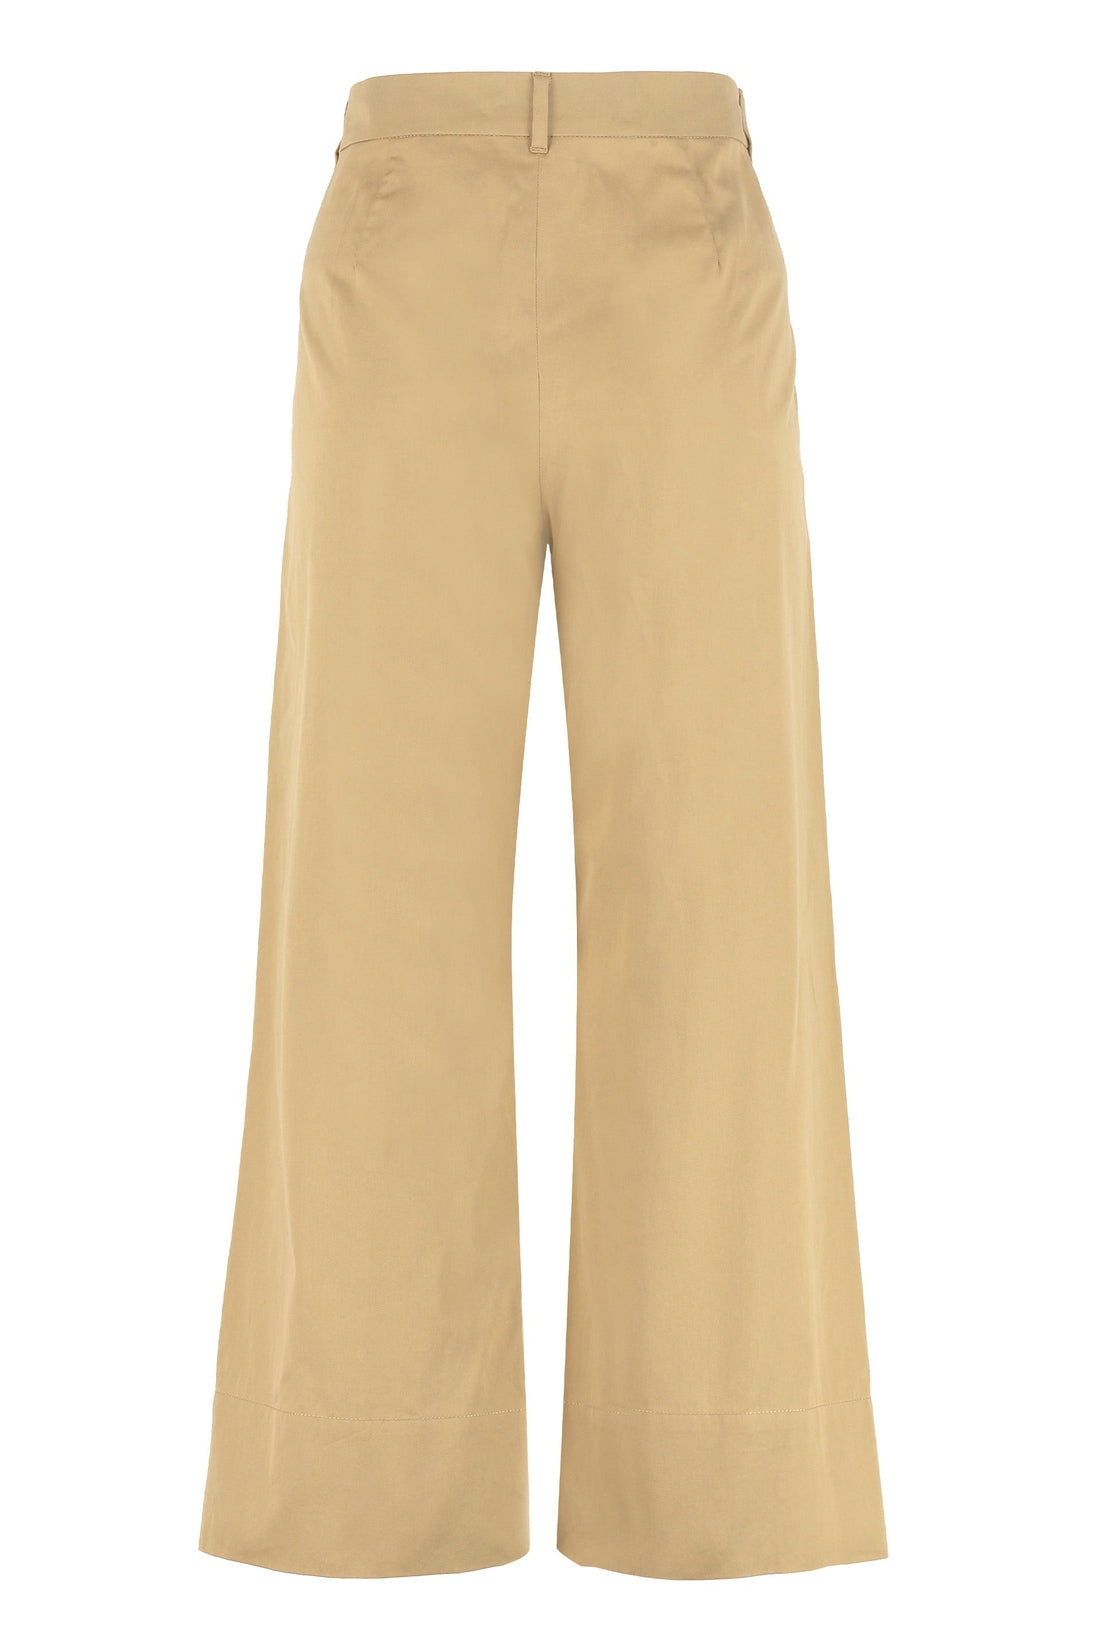 S MAX MARA-OUTLET-SALE-Cotton gabardine trousers-ARCHIVIST